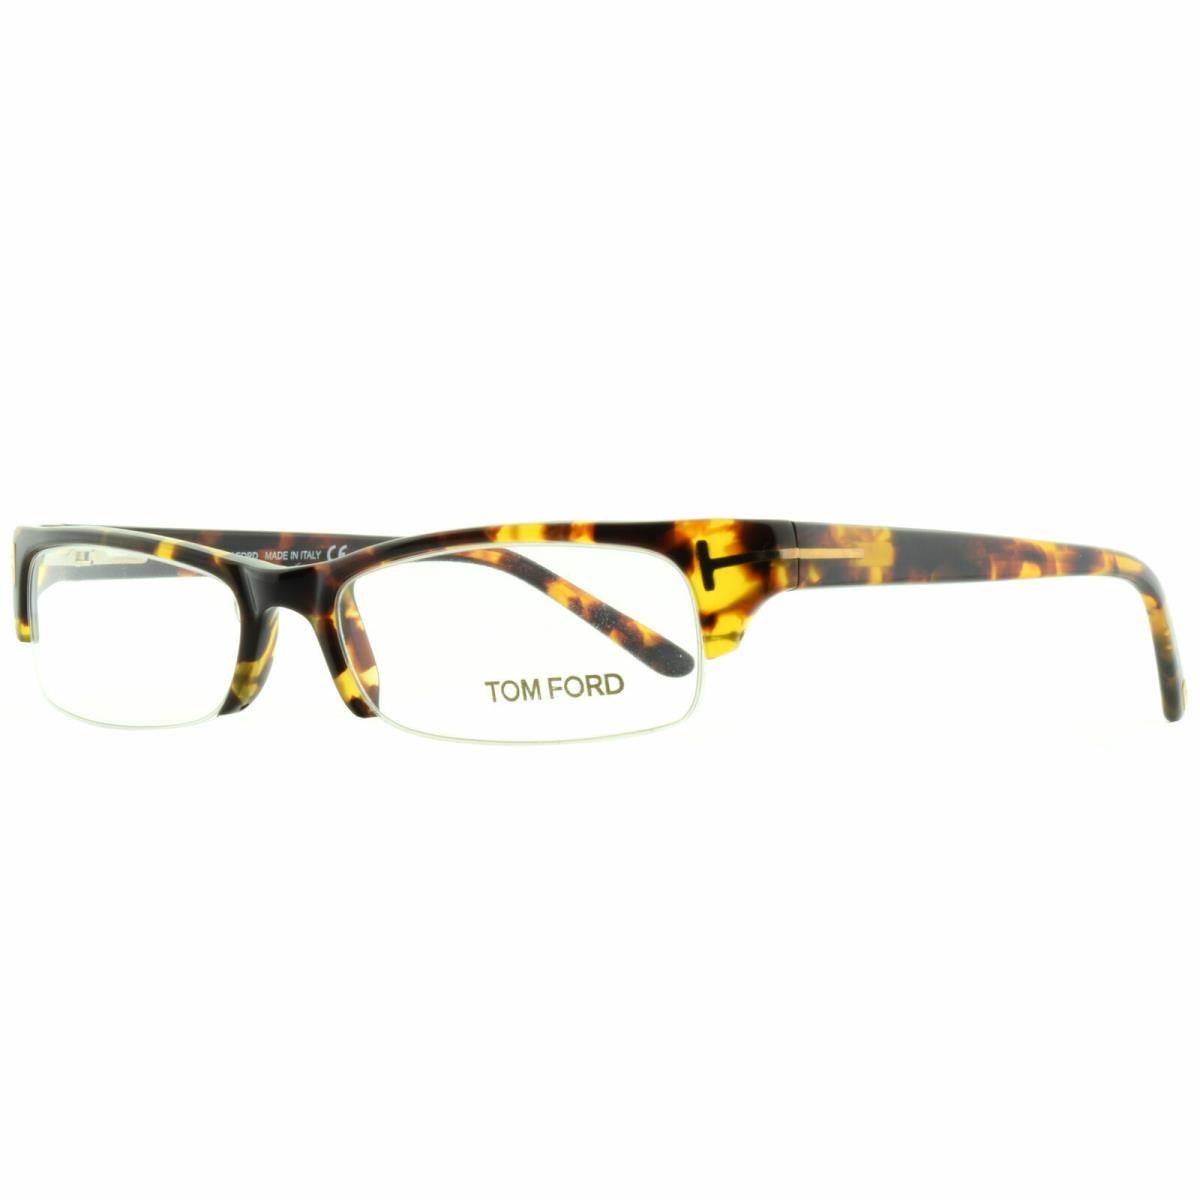 Tom Ford FT5122 052 Havana Rectangular Optical Frames Eyeglasses